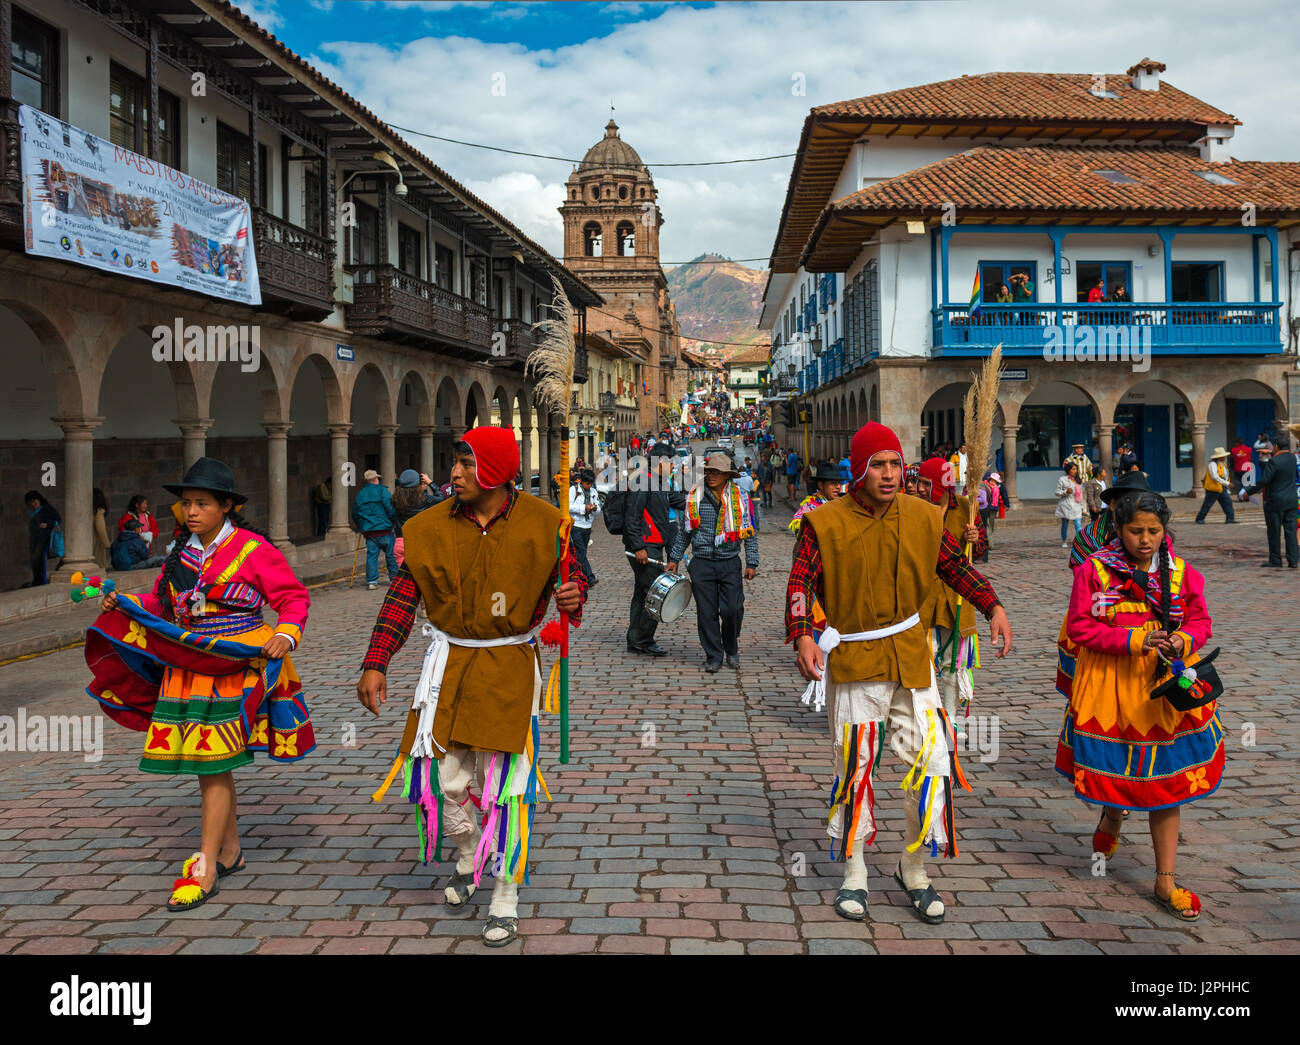 Persone in abito tradizionale nella città di Cusco partecipando con il programma Inti Raymi feste e una vista sull'architettura del centro della città, il Perù. Foto Stock